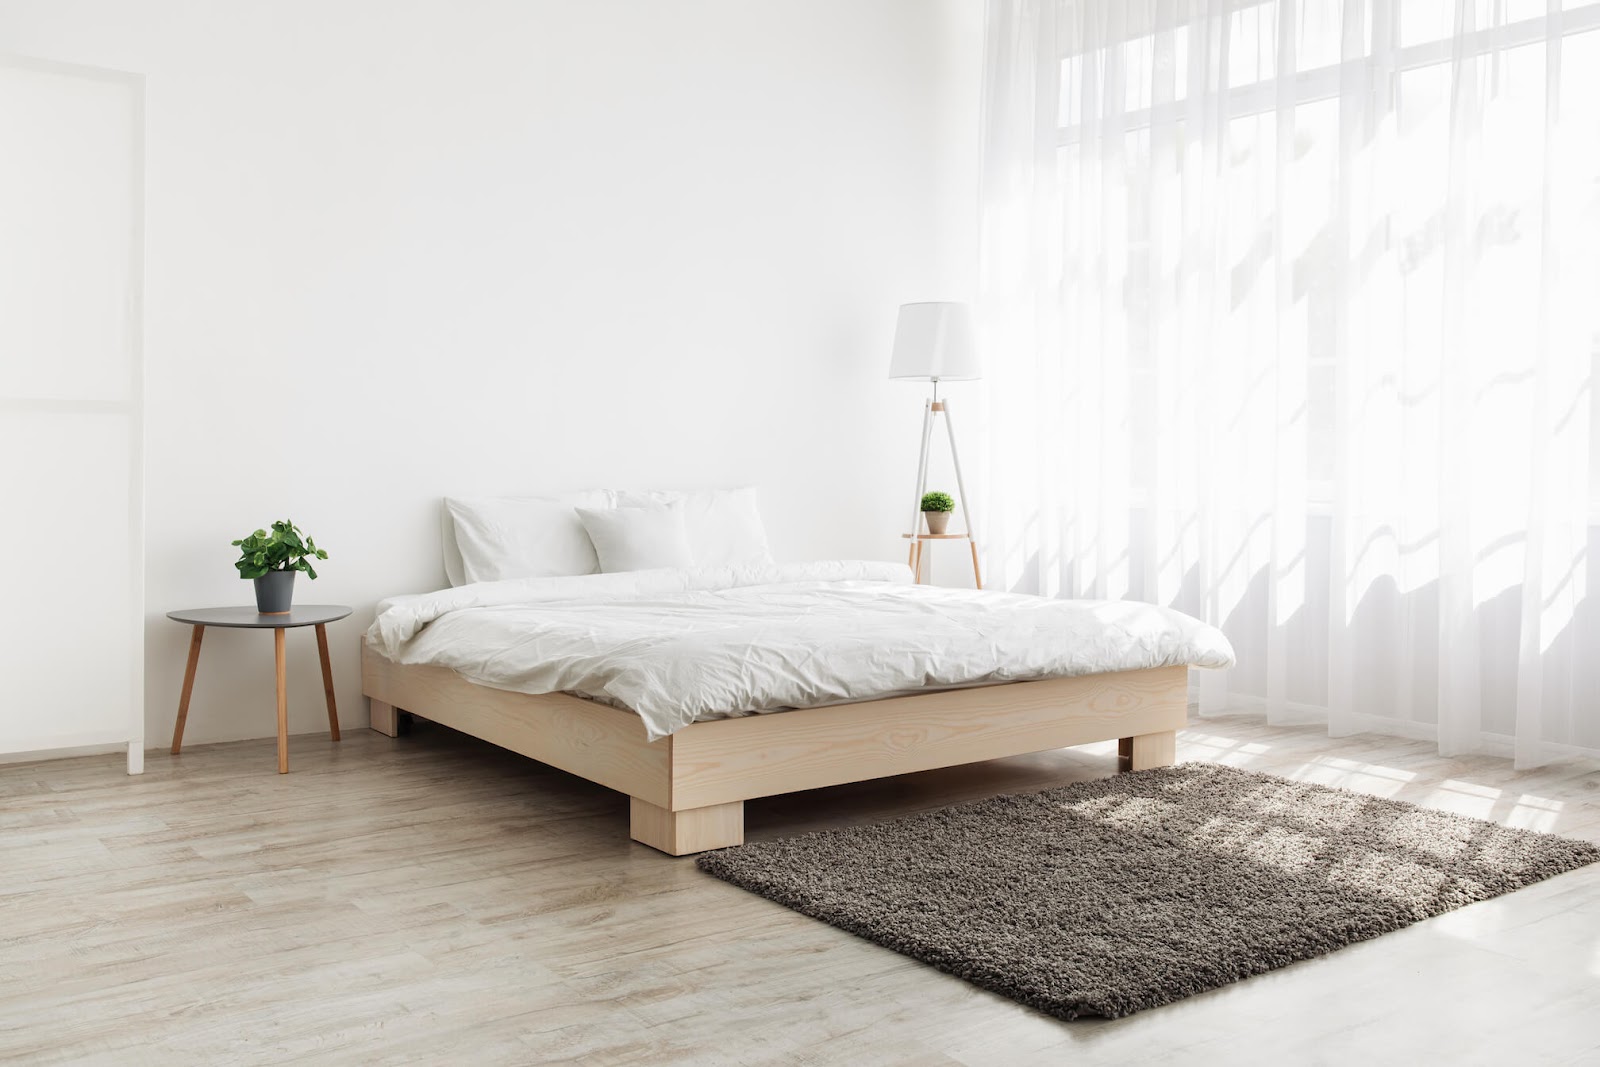 現代簡約風格特色：簡約的臥室設計強調開放式空間、減少多餘的隔間